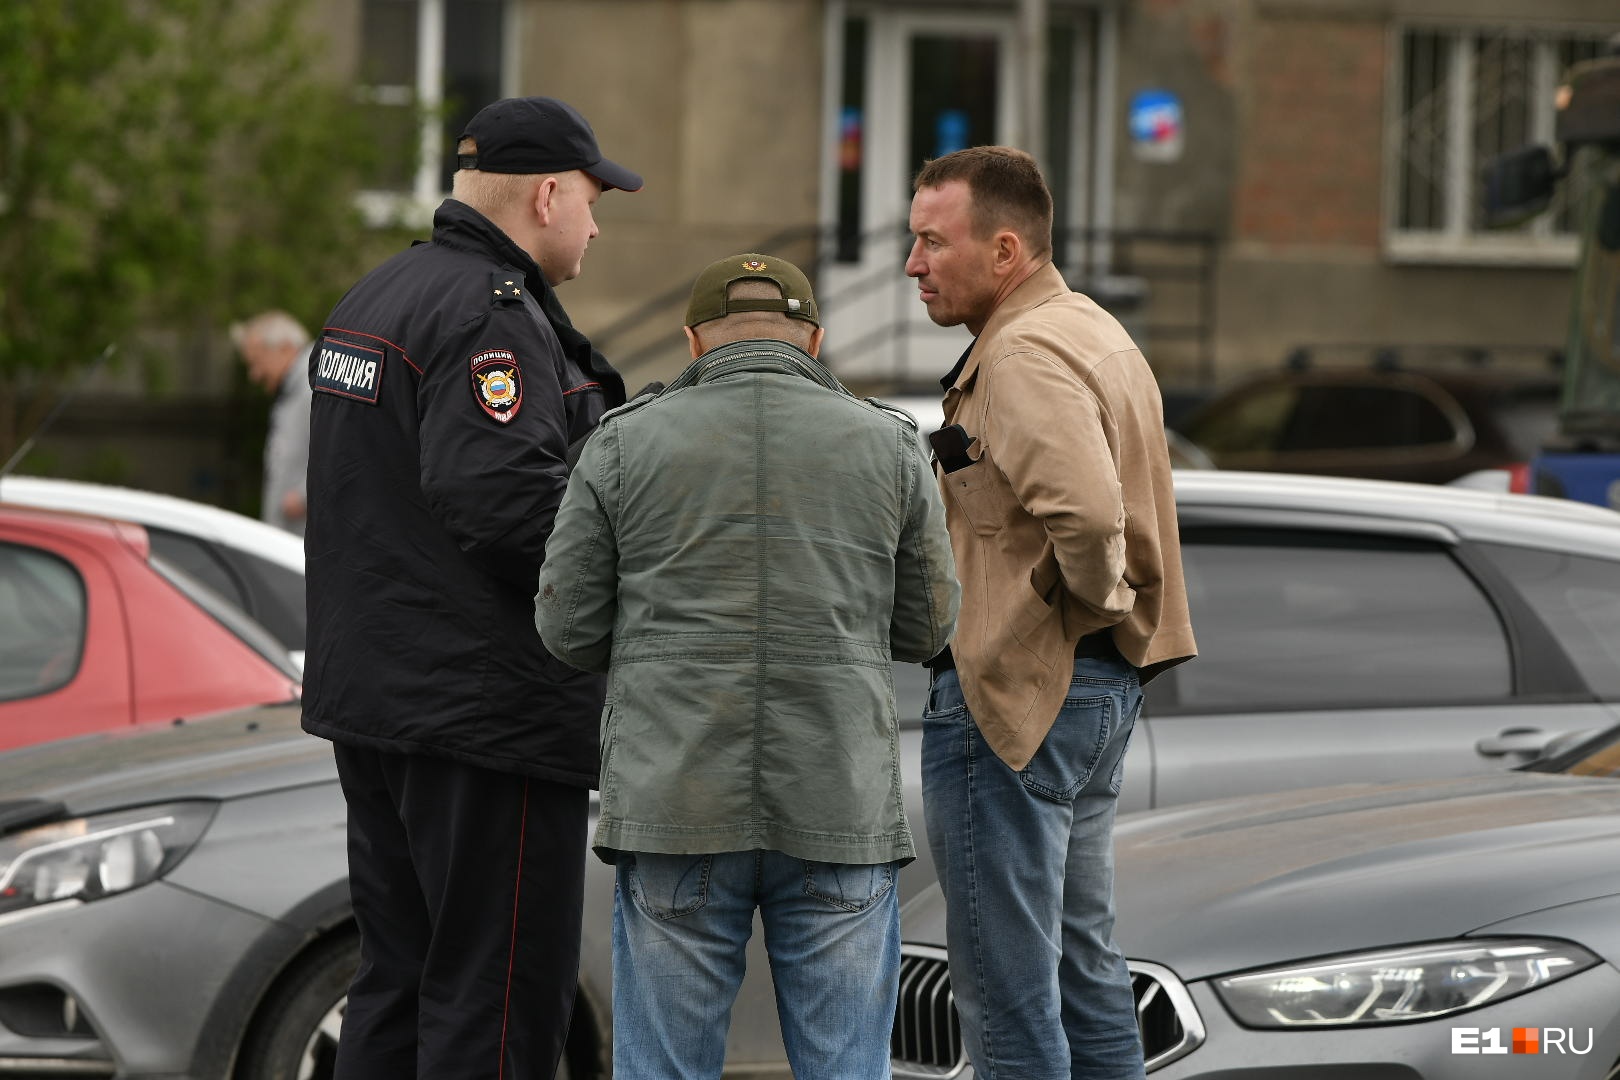 Юрий Мезенцев (справа) и Андрей Хан беседуют с полицейским на месте происшествия